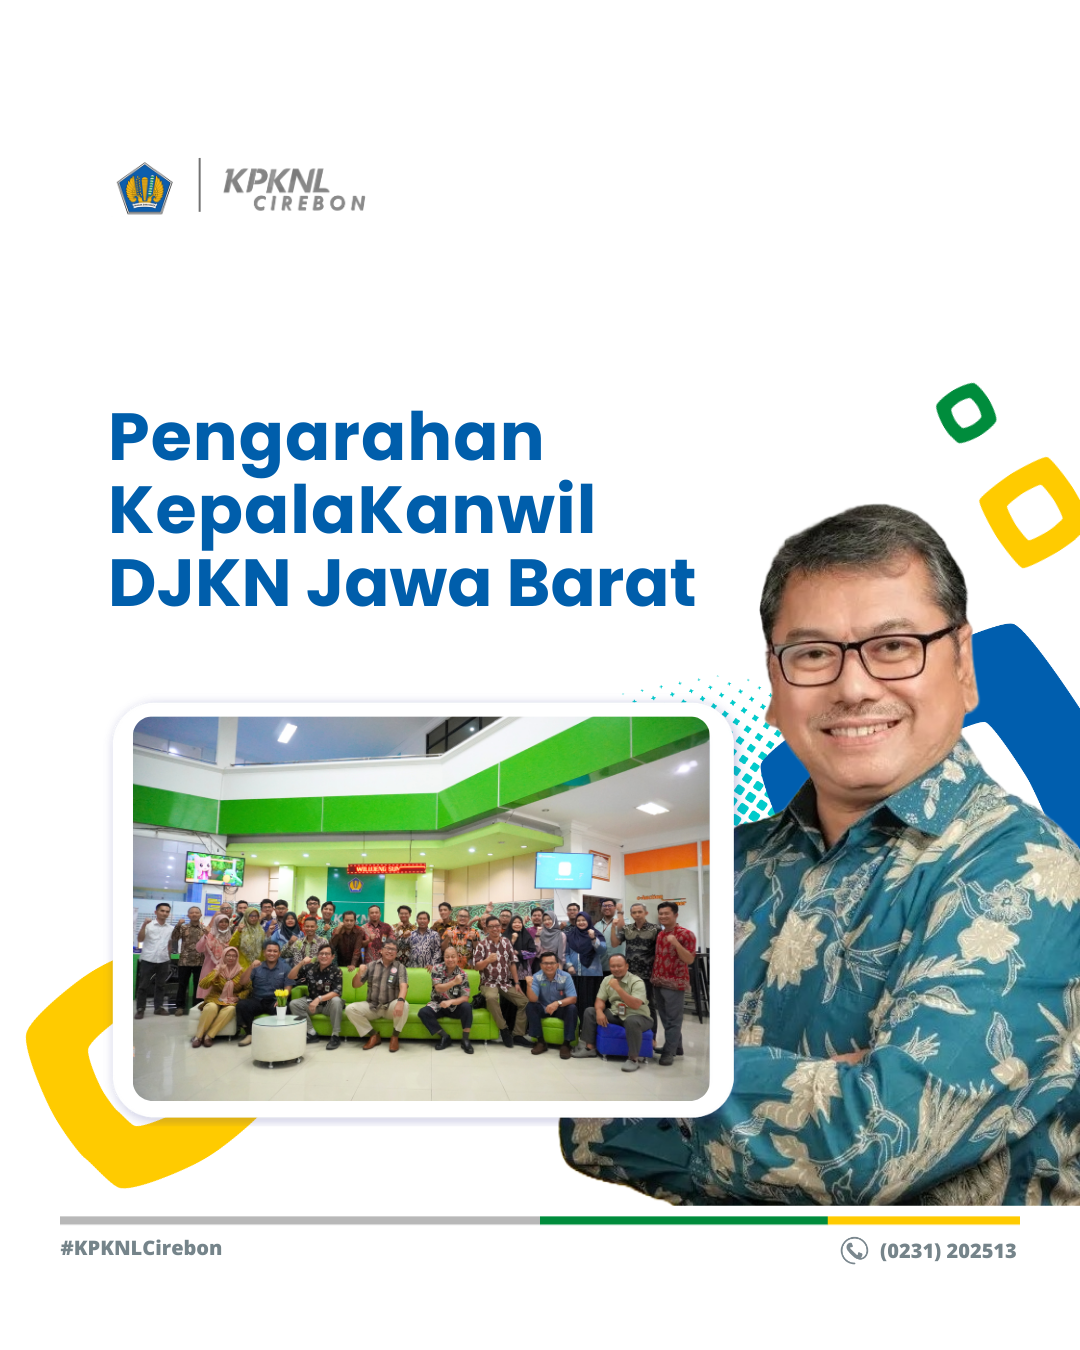 "Pentingnya Sosiokultural Pada Pegawai" Pengarahan Kepala Kanwil DJKN Jawa Barat